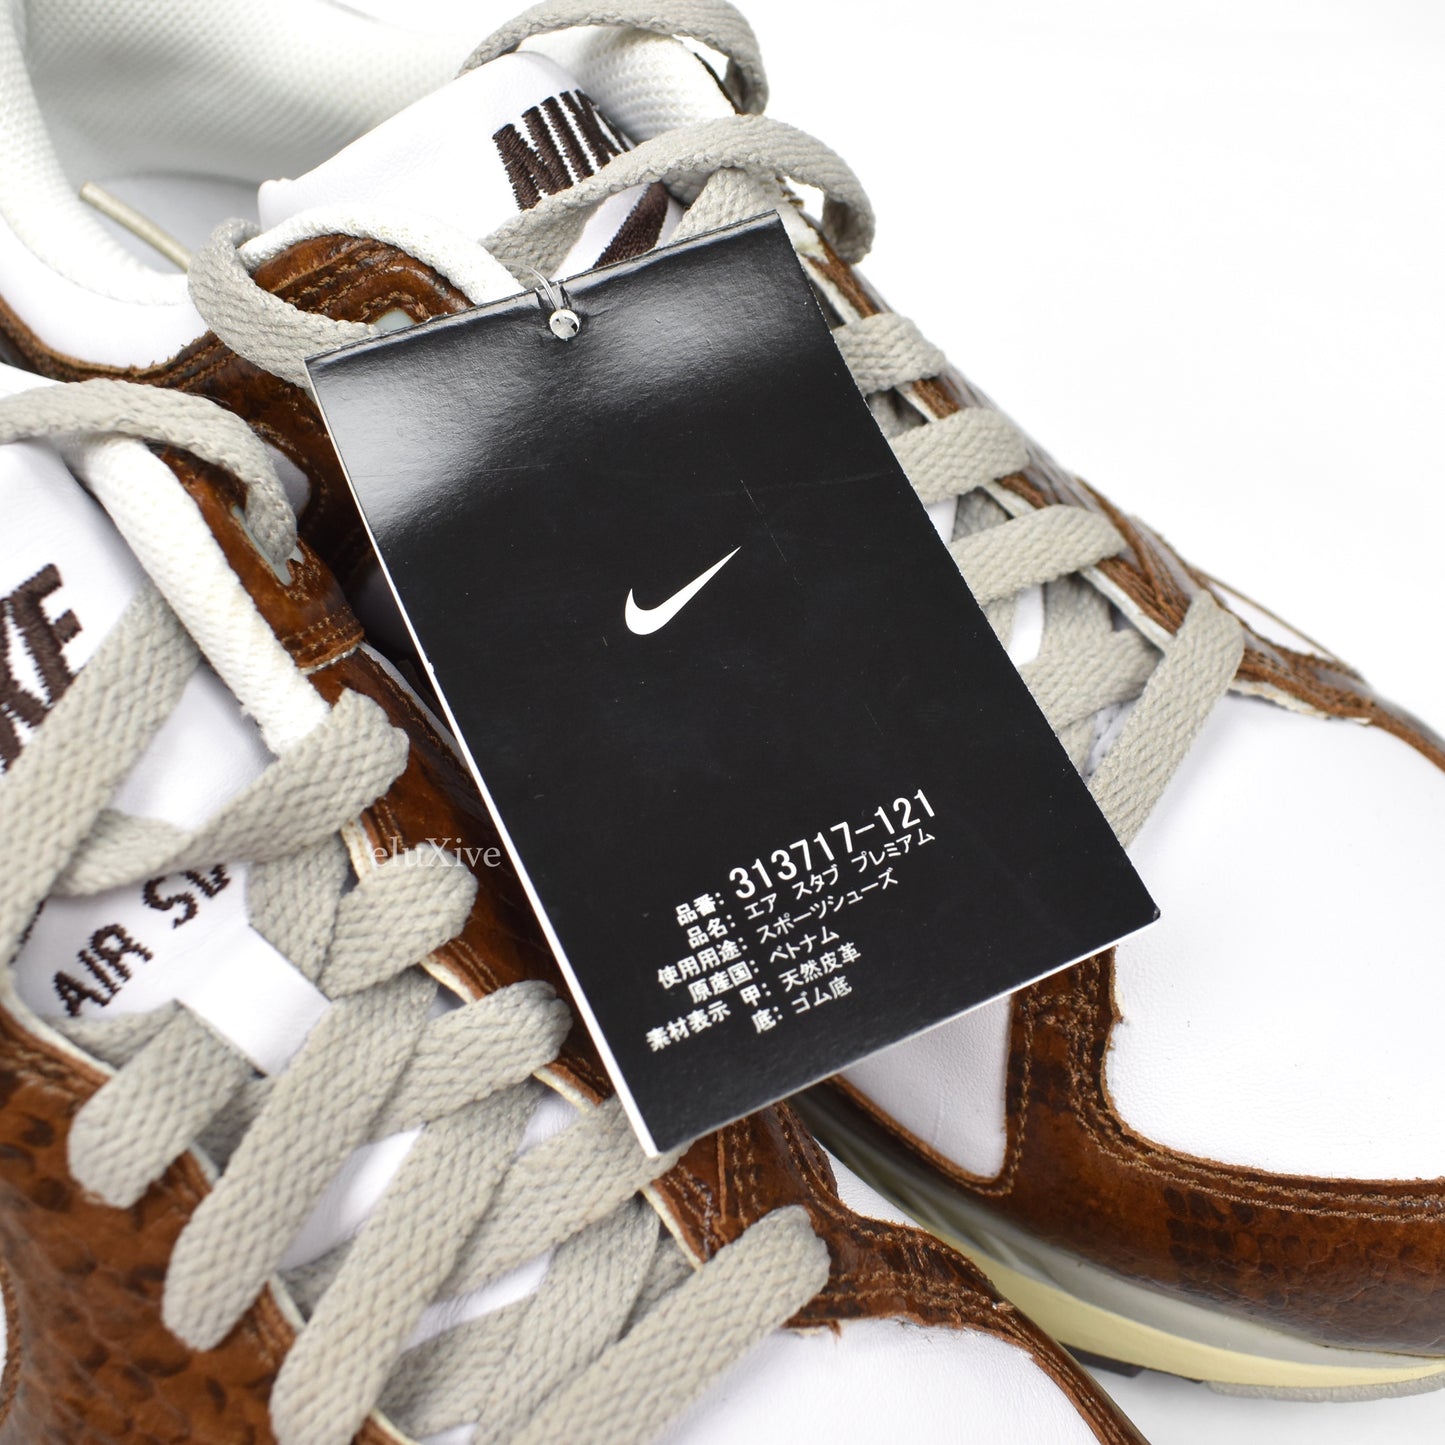 Nike - Air Stab Premium 'Escape' (White/Baroque Brown)